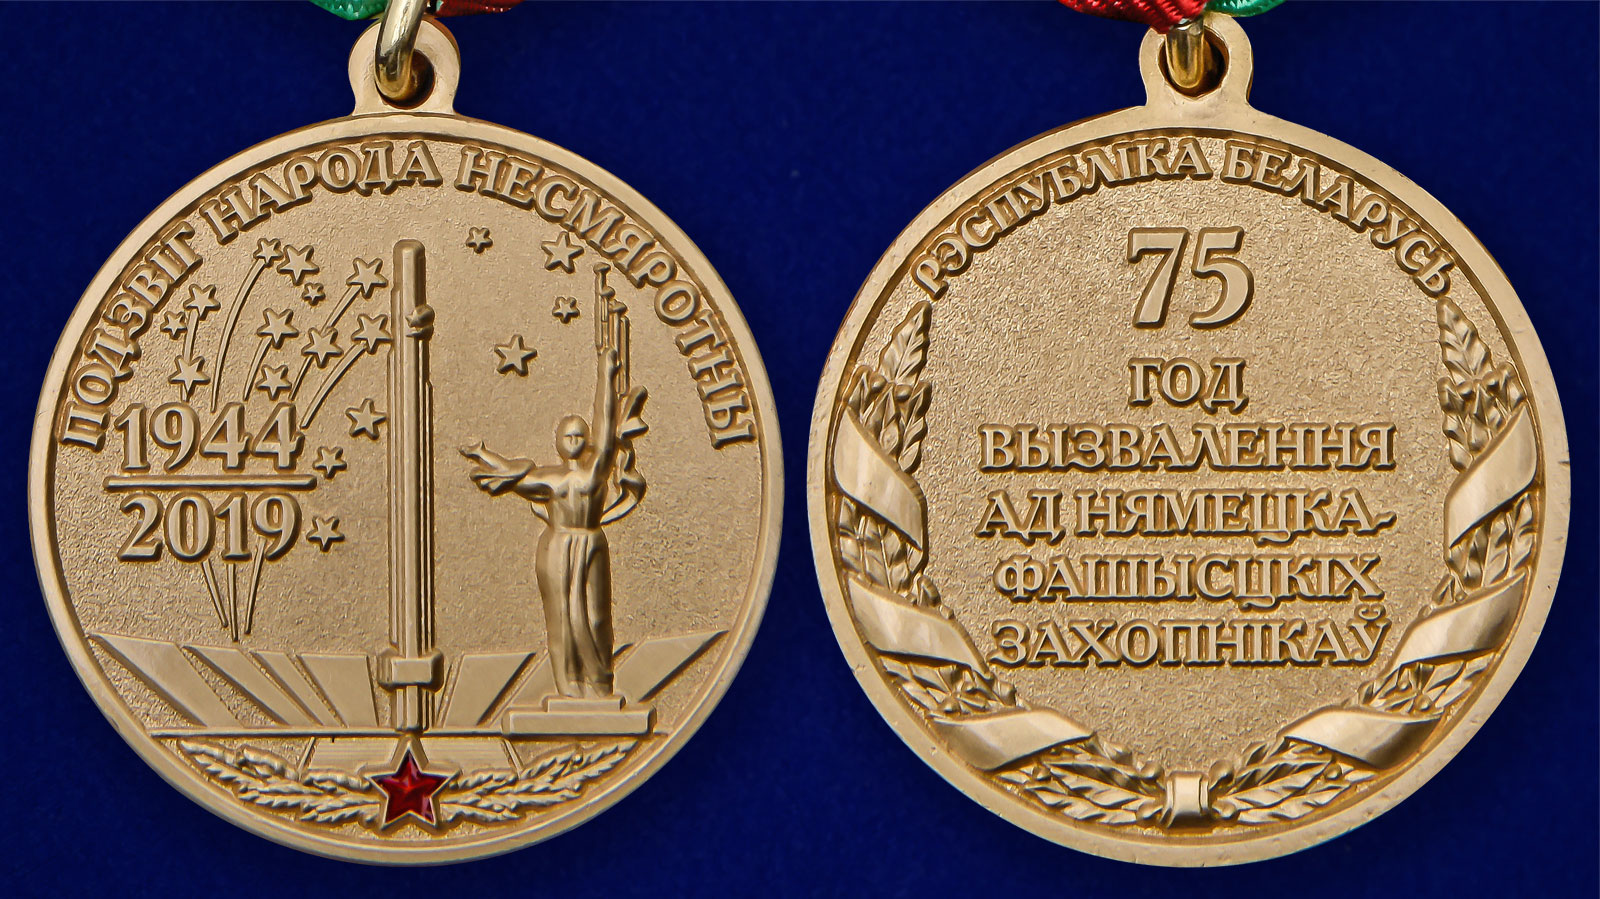 Памятная медаль "день освобождения Беларуси от немецко-фашистских захватчиков" 